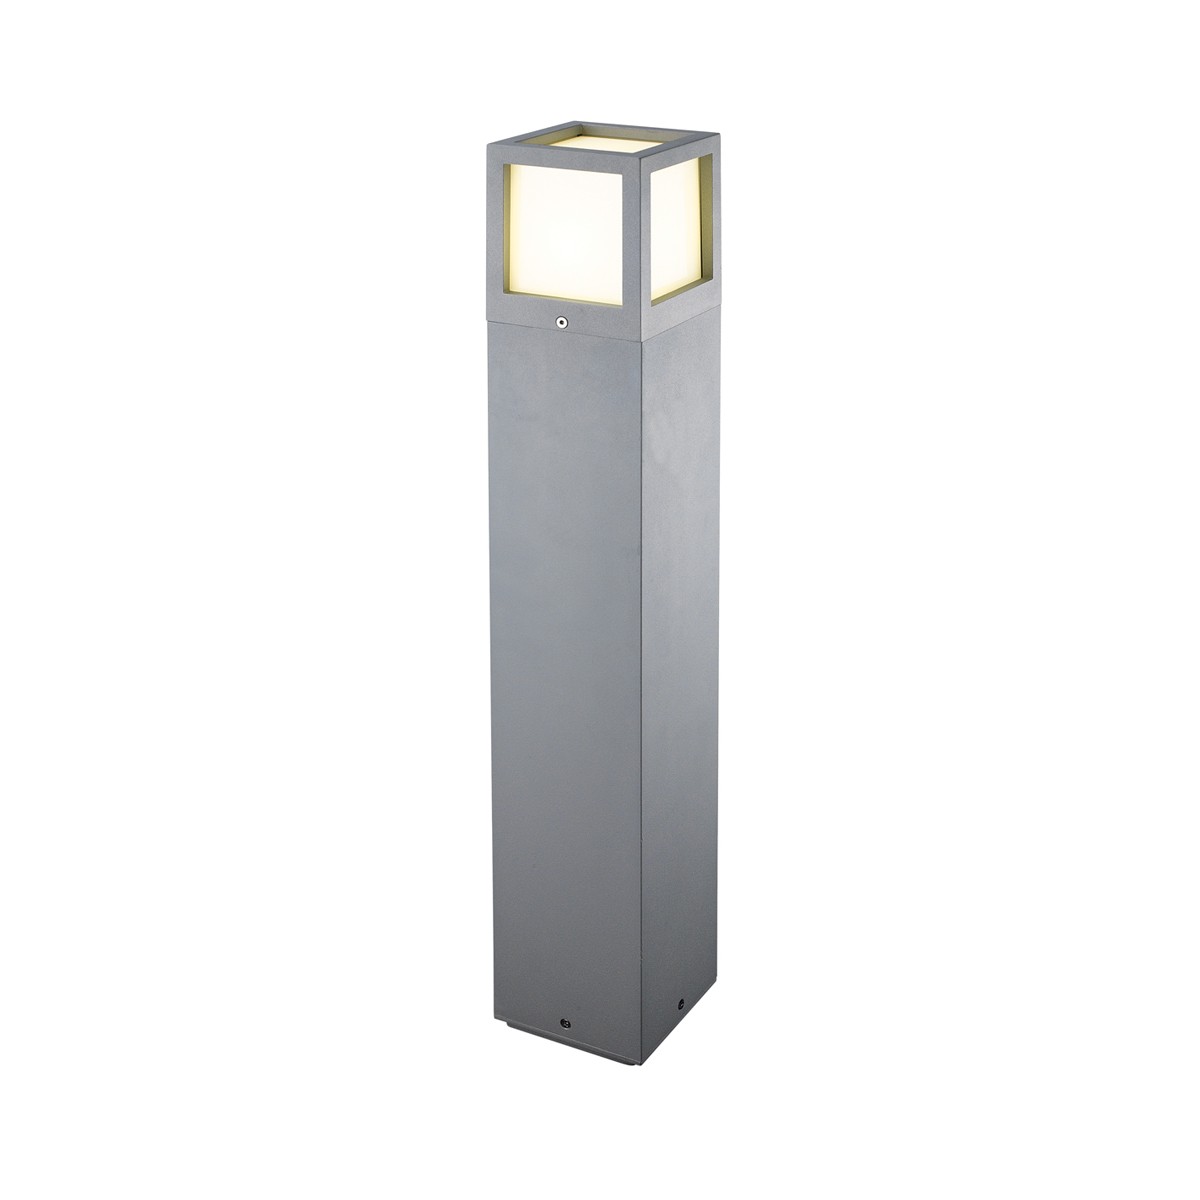 Φωτιστικό Αλουμινίου ΚολώναIP54 Ε27 650mm Ανθρακί Χρώμα        VK/01085/AN